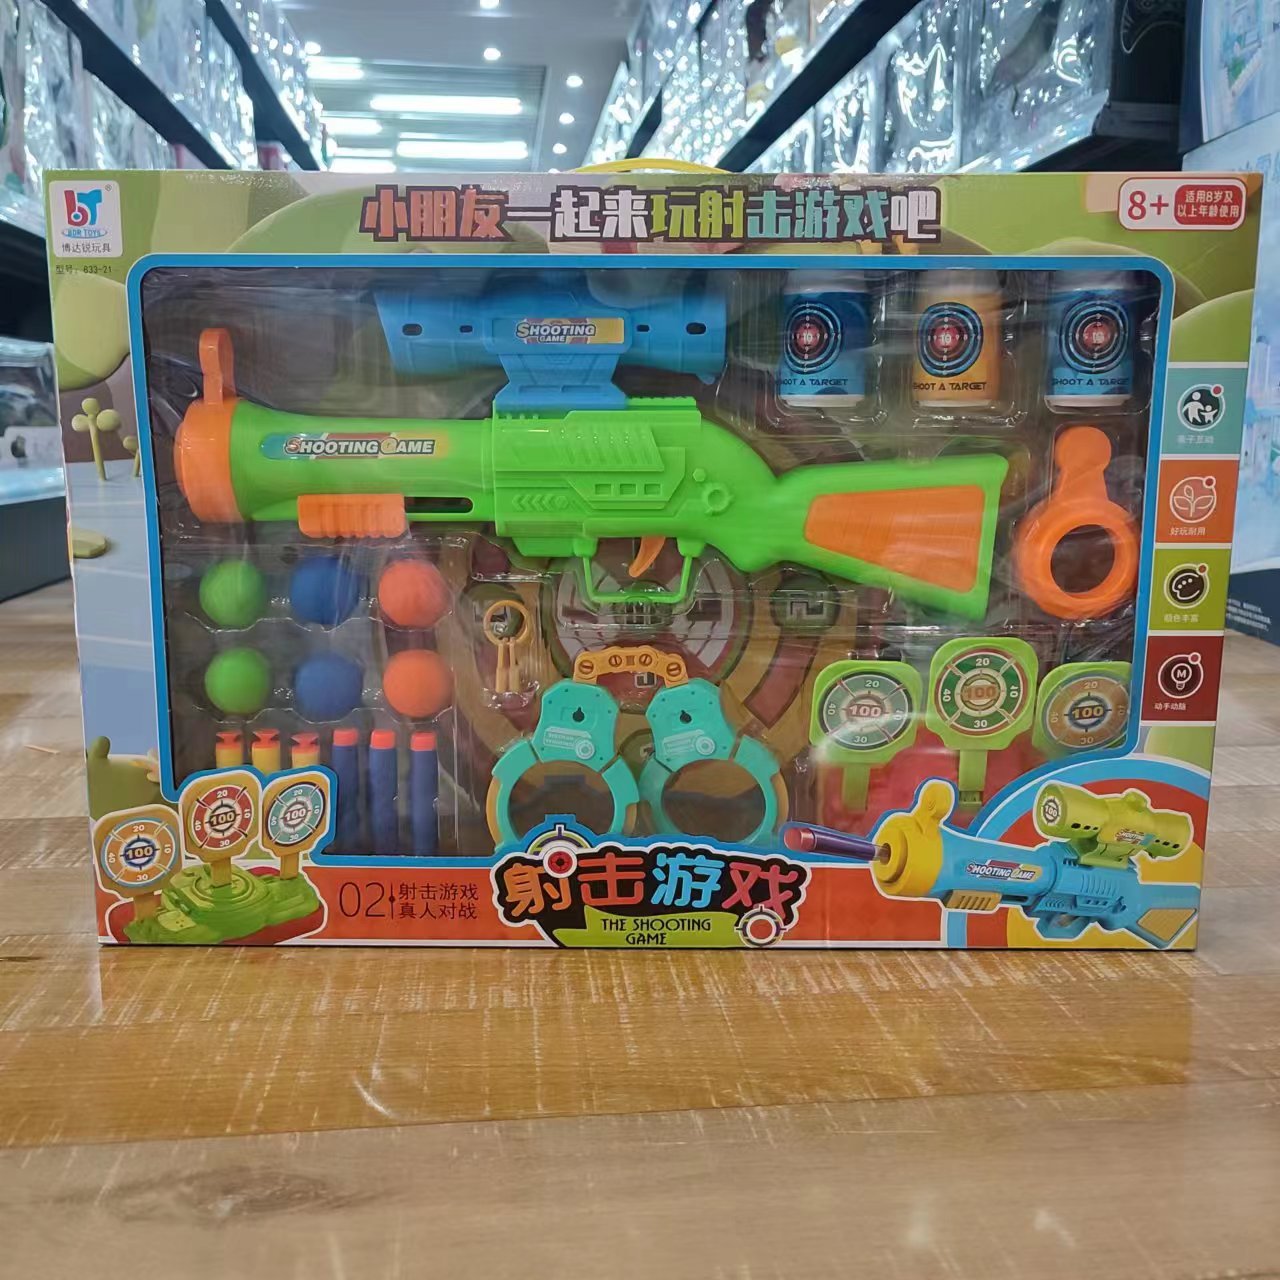 博达锐833-21软弹射击动力玩具枪男孩儿童互动打靶游戏早教益智